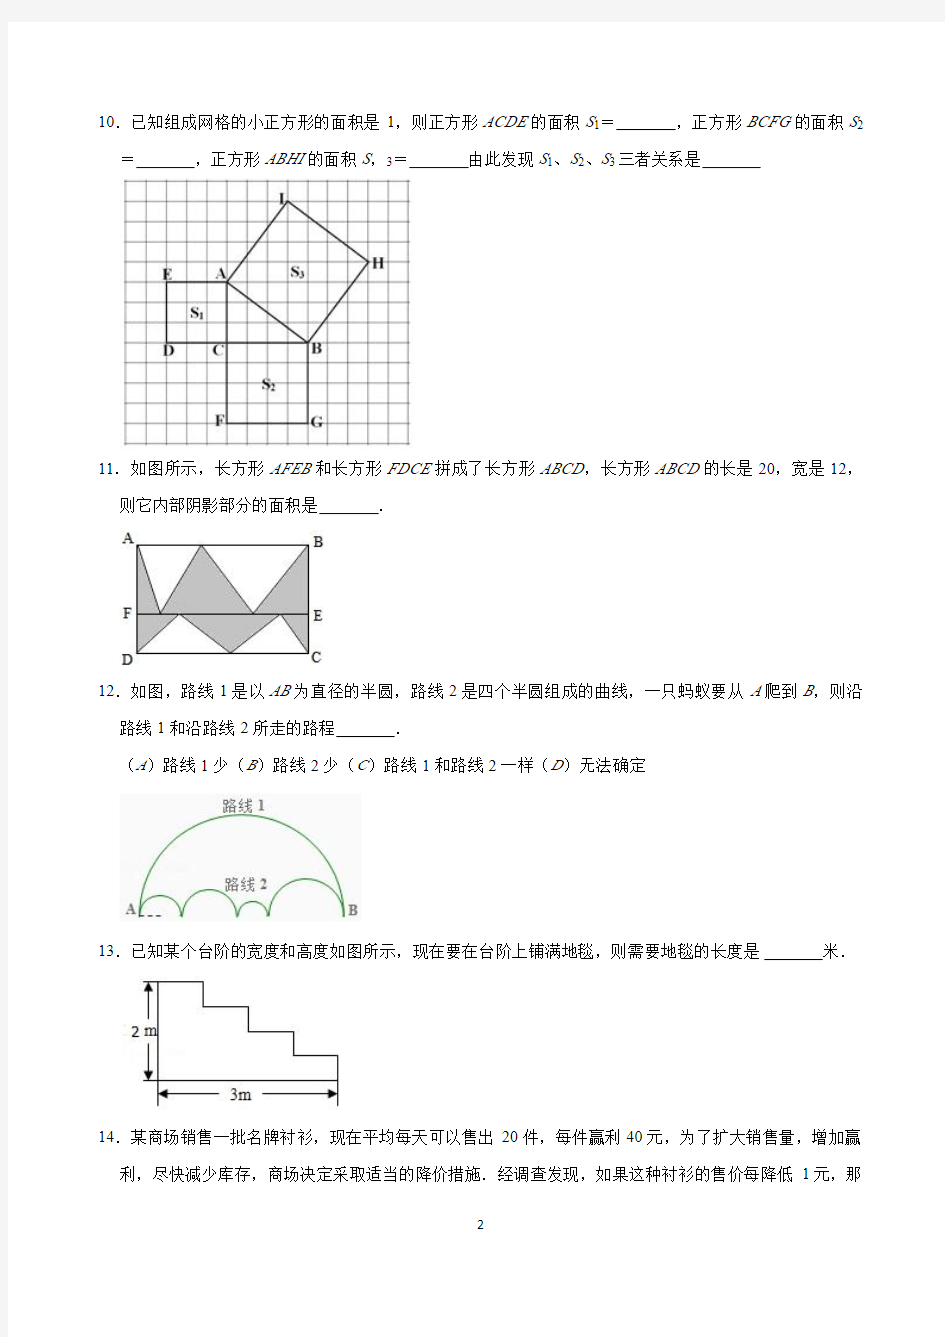 2019年北京市重点中学初一入学分班数学试卷